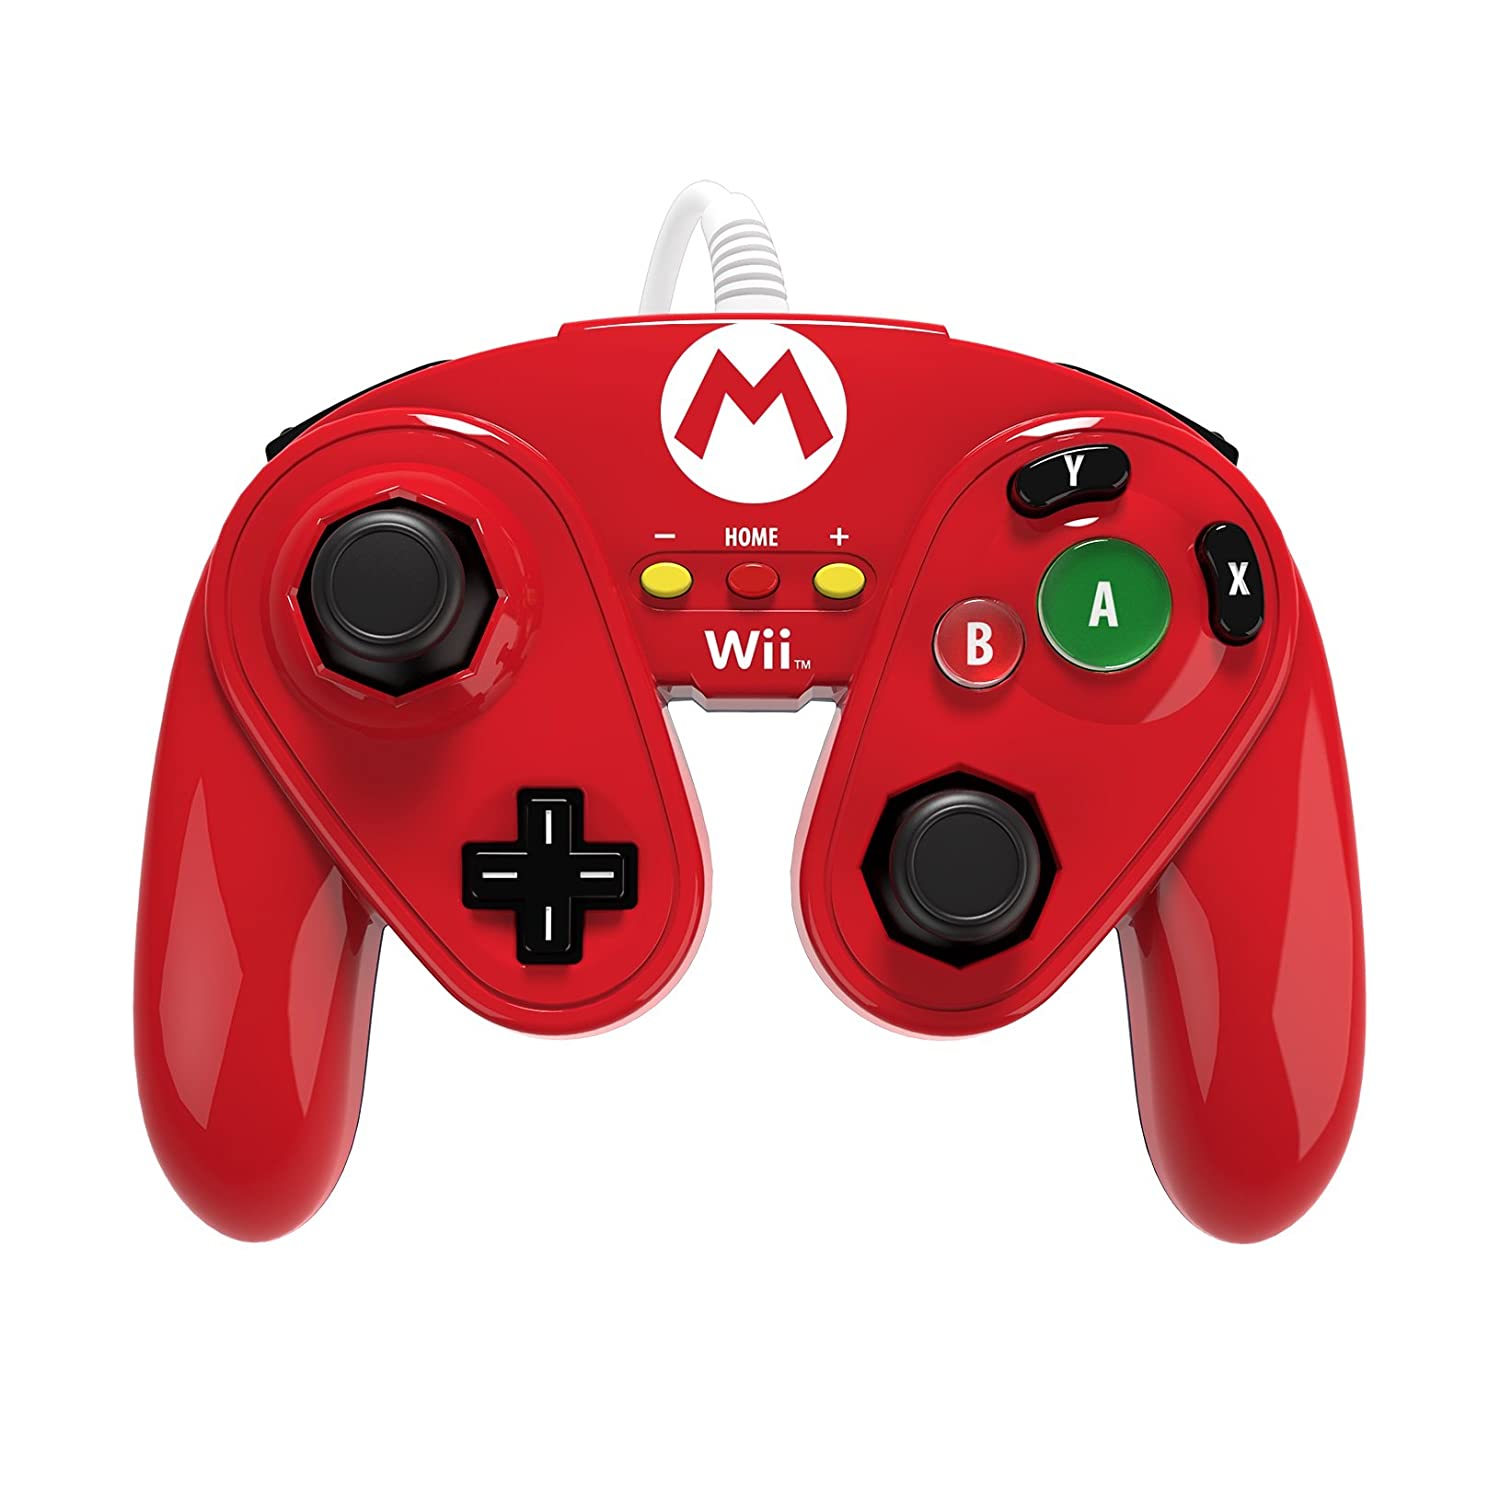 Nintendo Wii U - Gamecube Controller - Mario Design